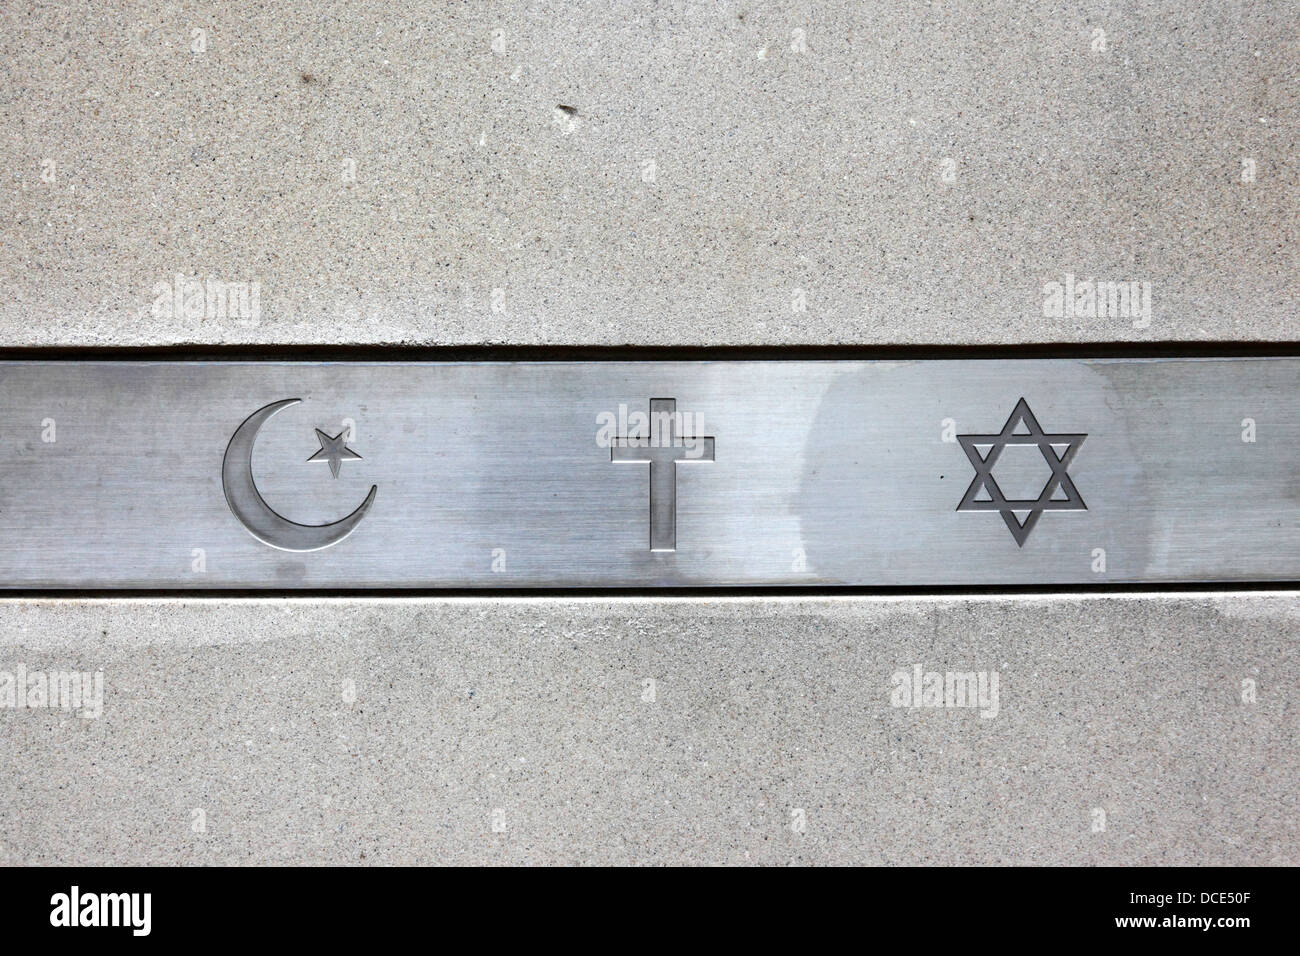 Les principaux symboles de religions abrahamiques (christianisme, judaïsme et islam), le Pape Jean-Paul II Prière Jardin, Baltimore, USA Banque D'Images